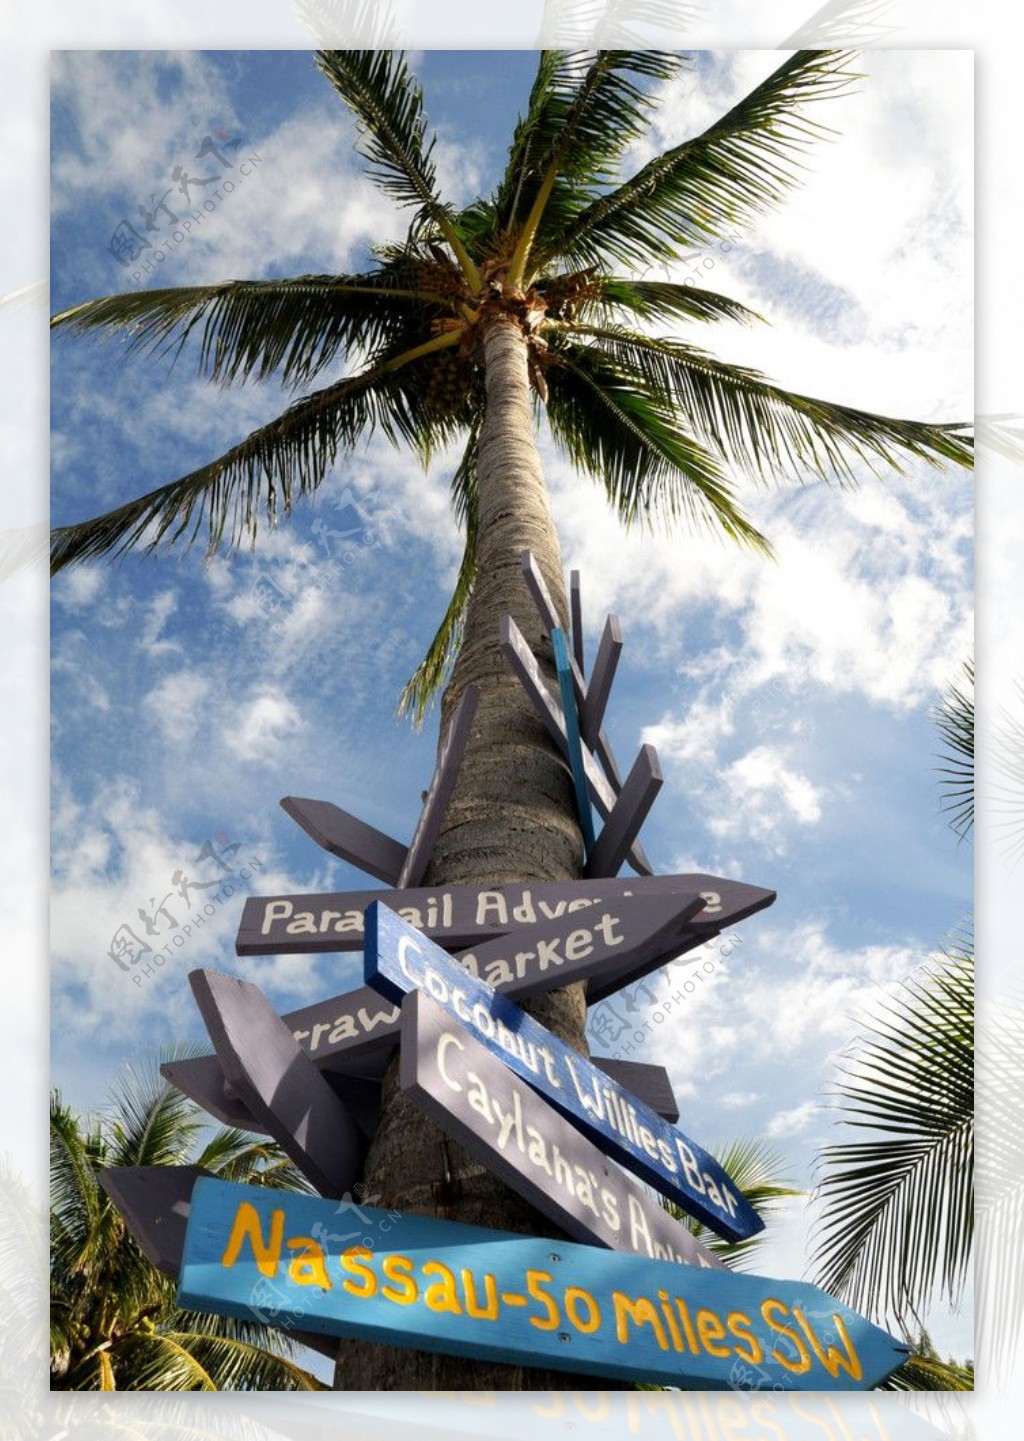 椰树路标图片